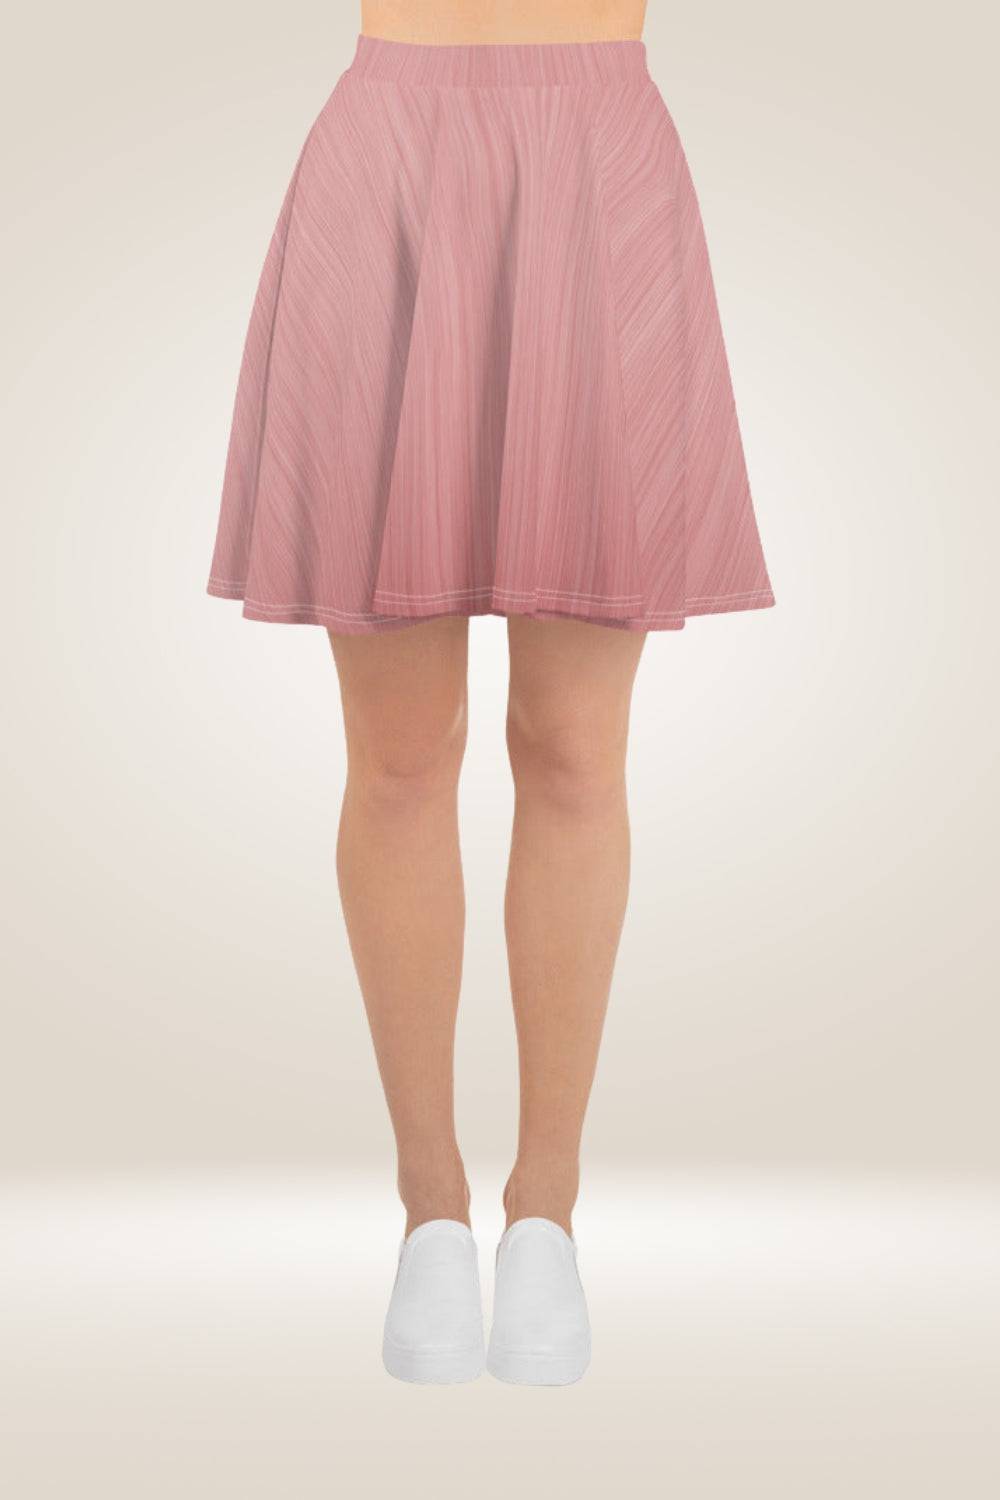 blush Metallic Pink Skater Skirt - TGC Boutique - Skirt